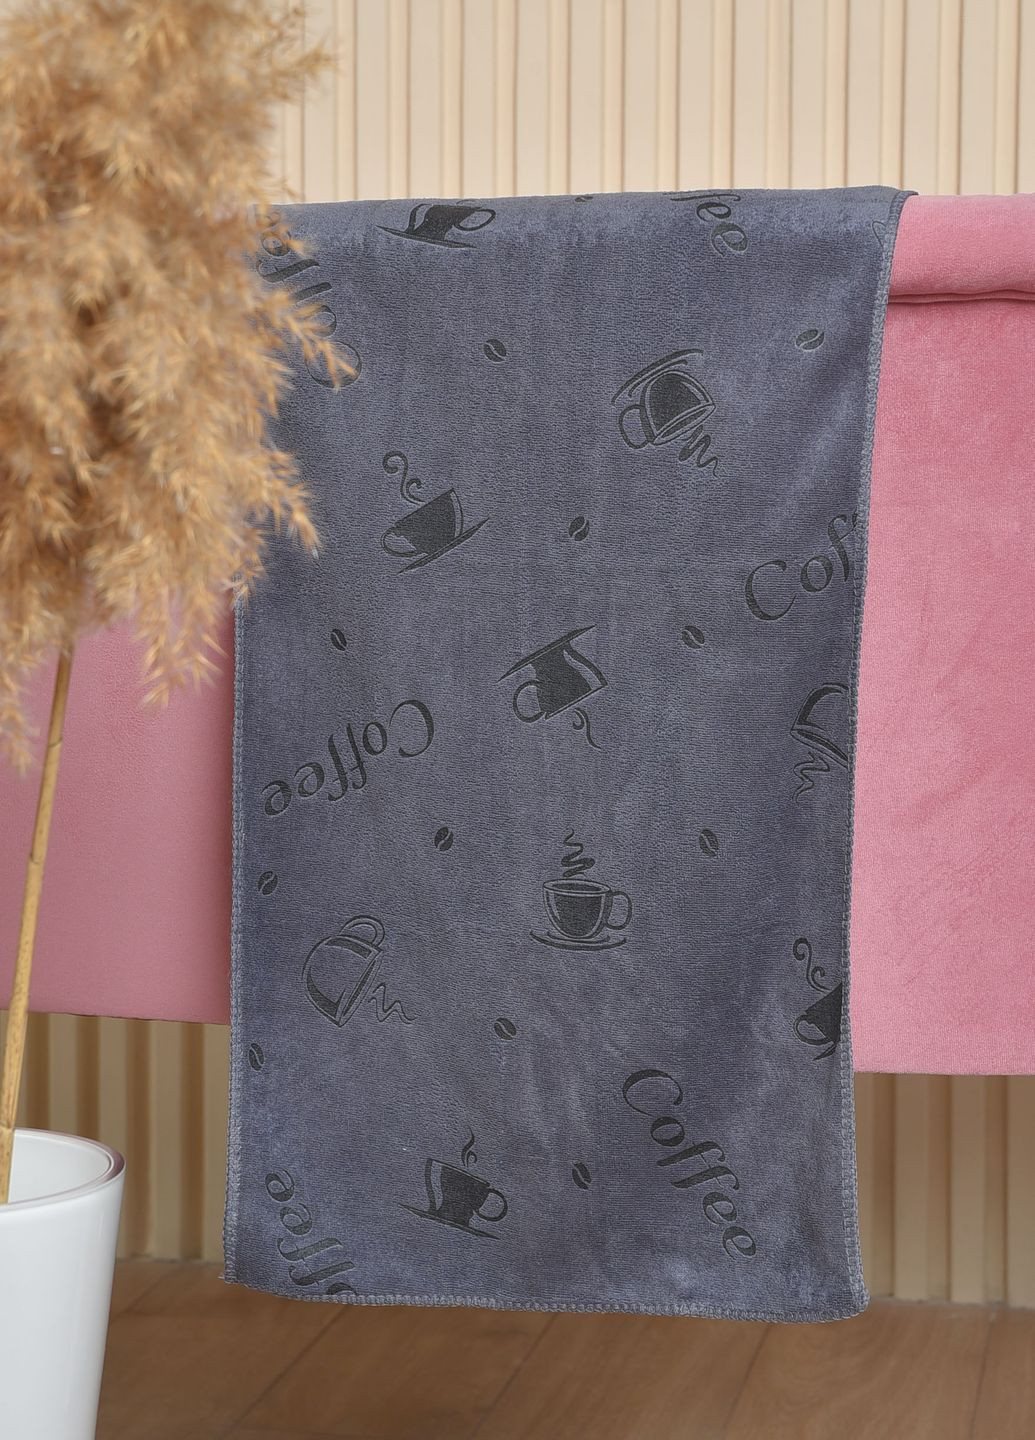 Let's Shop полотенце кухонное микрофибра серого цвета однотонный серый производство - Китай